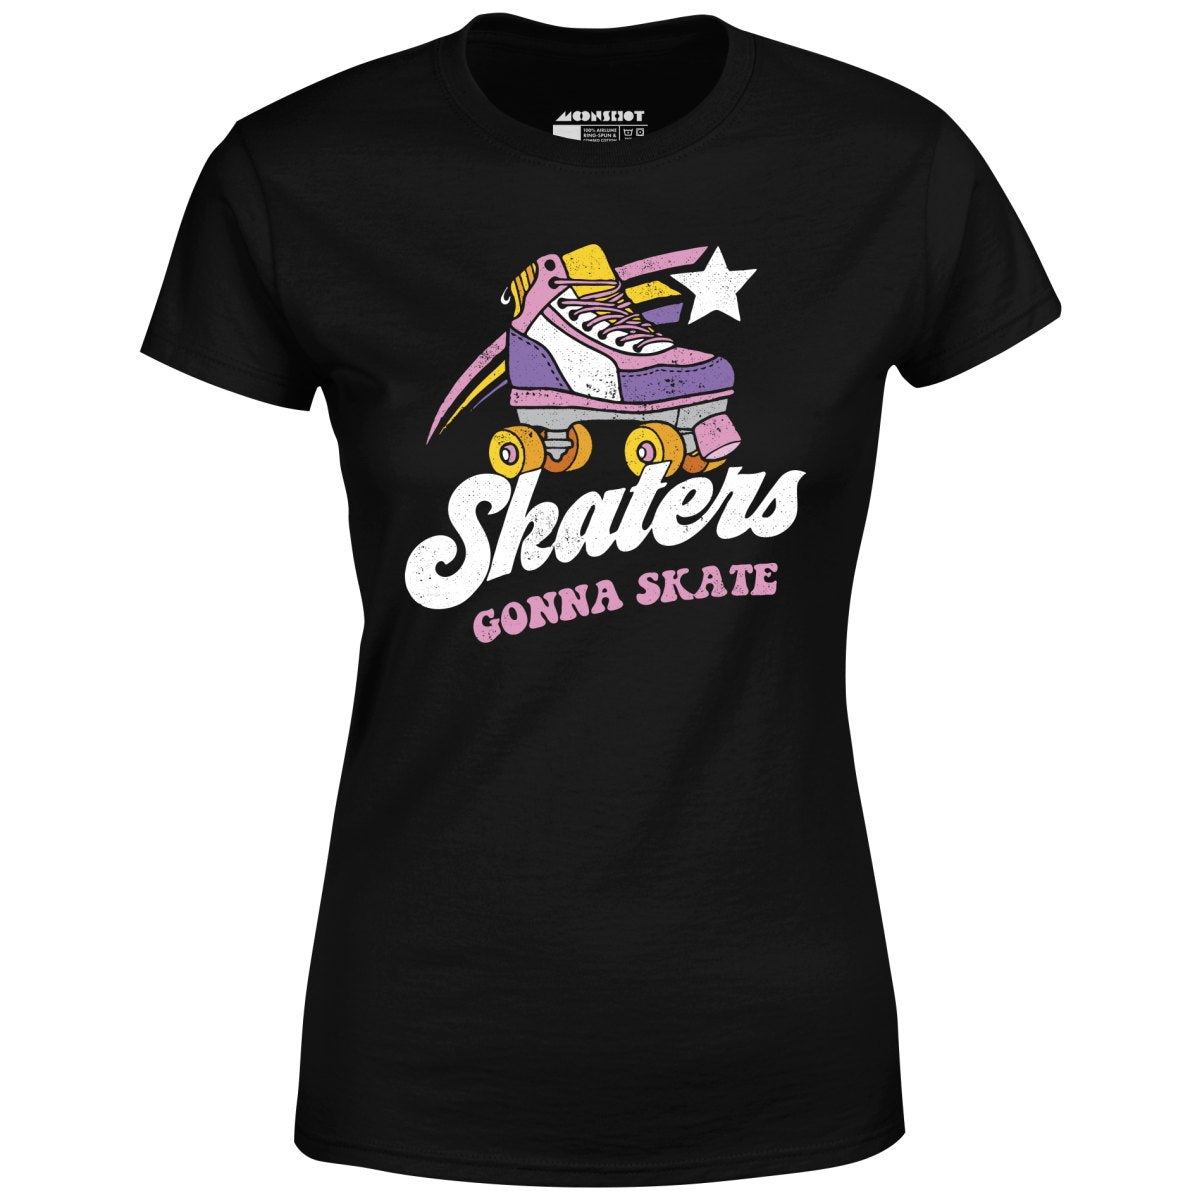 Skaters Gonna Skate - Women's T-Shirt